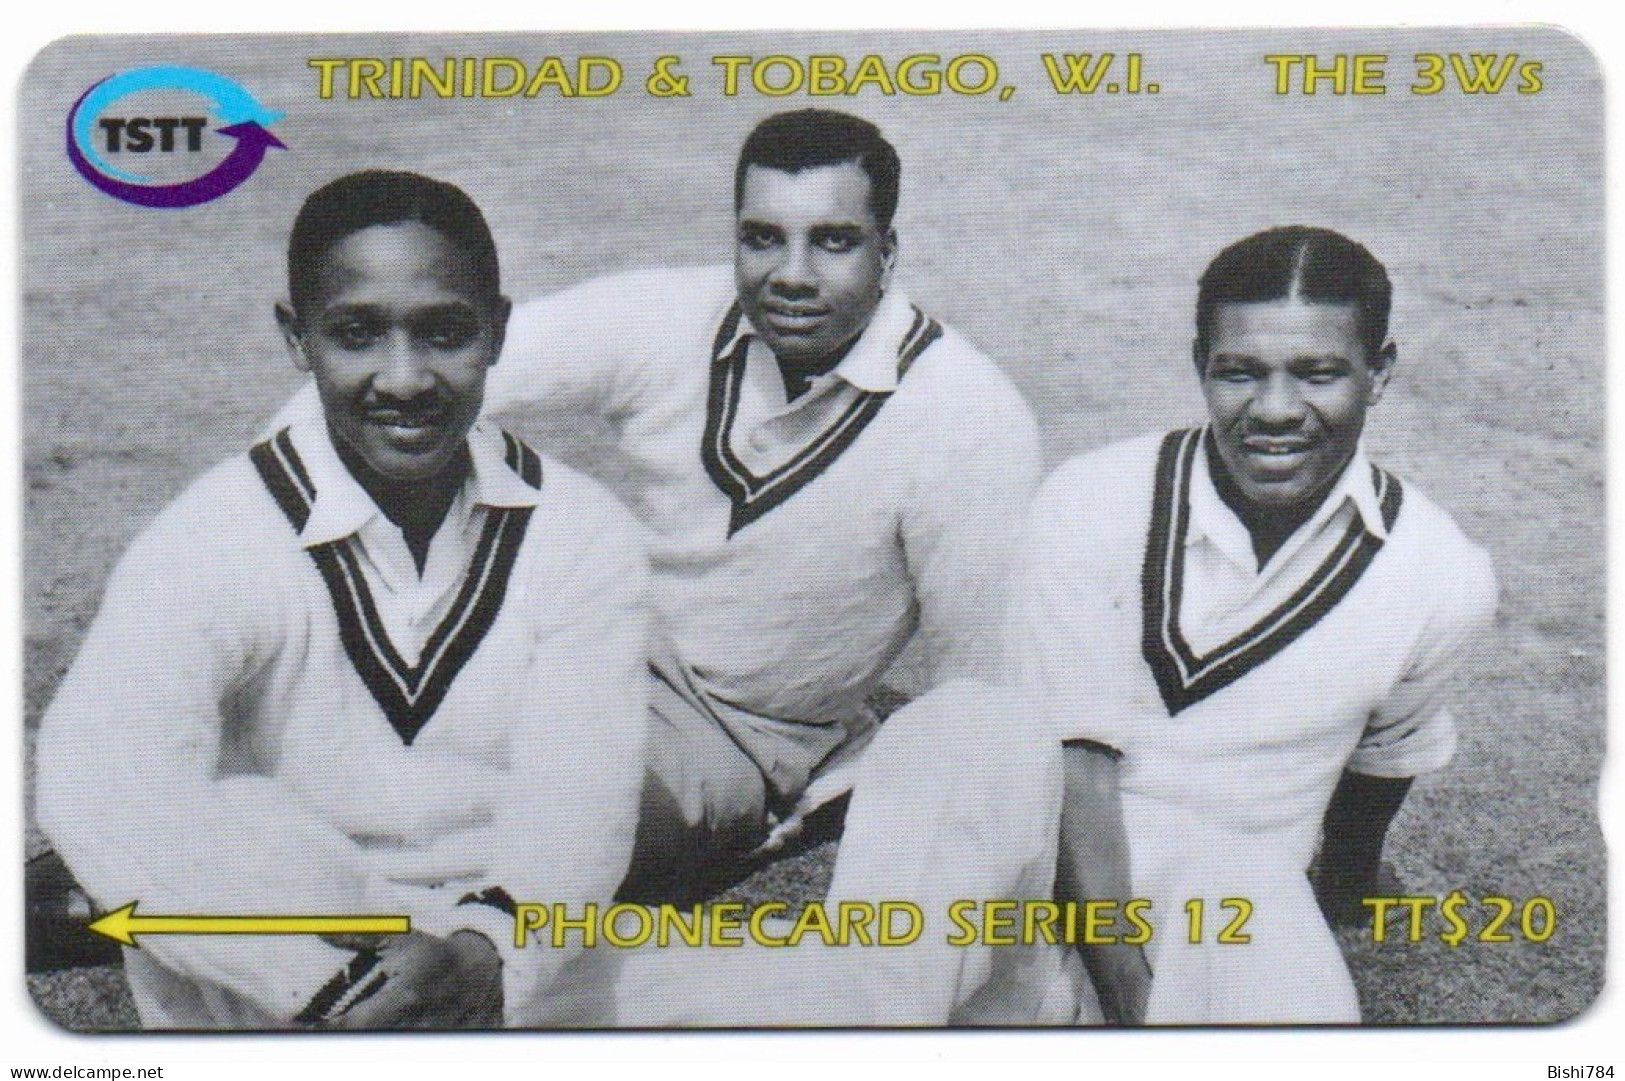 Trinidad & Tobago - 3Ws - 1180TTC - Trinidad & Tobago